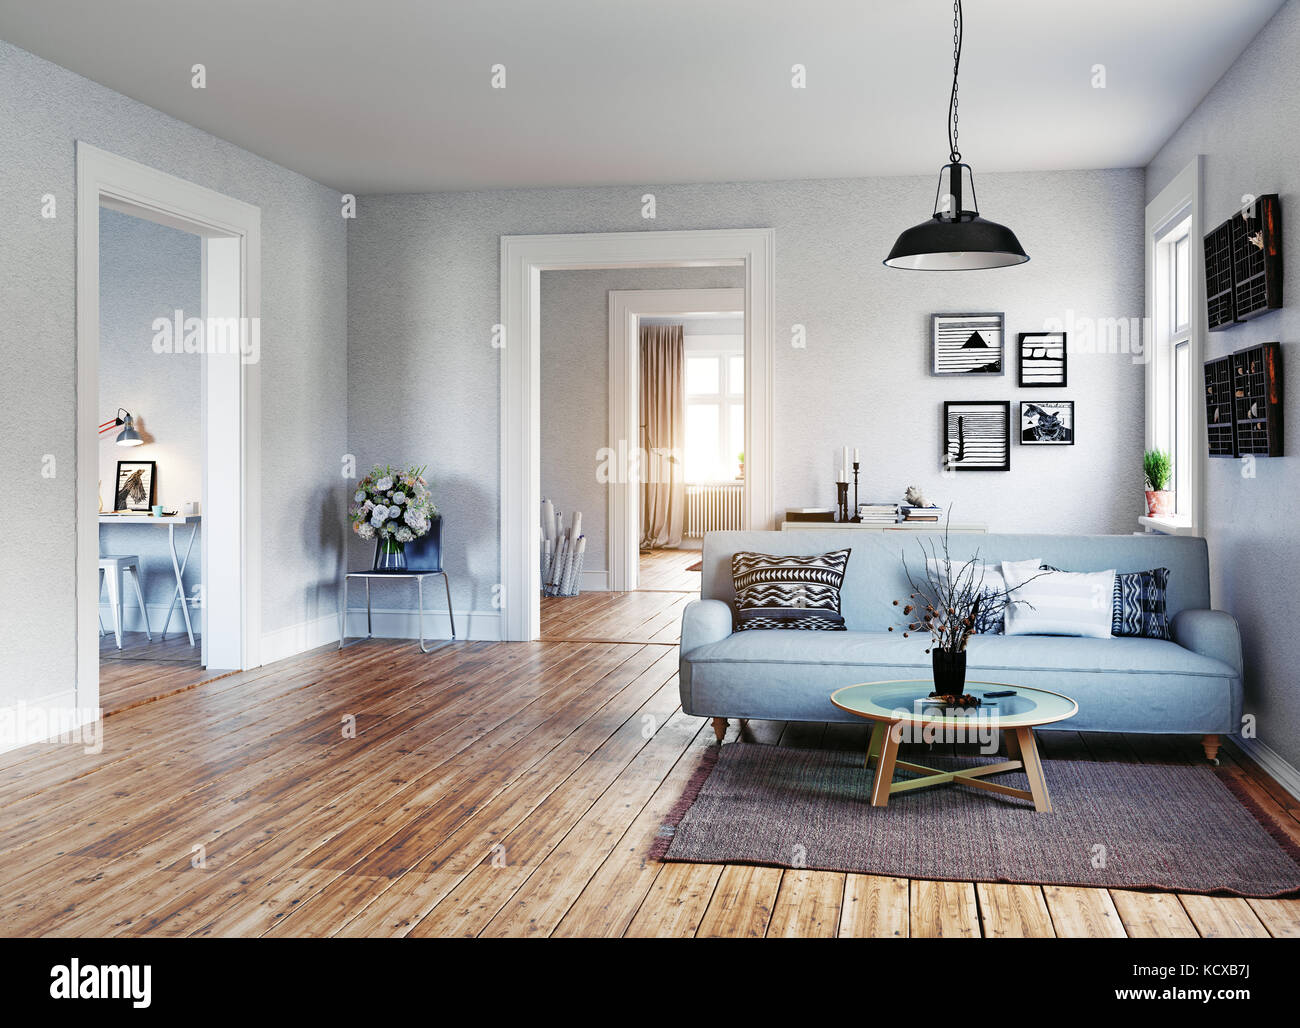 Mesa cristal con azules  Decor, Home decor, Furniture